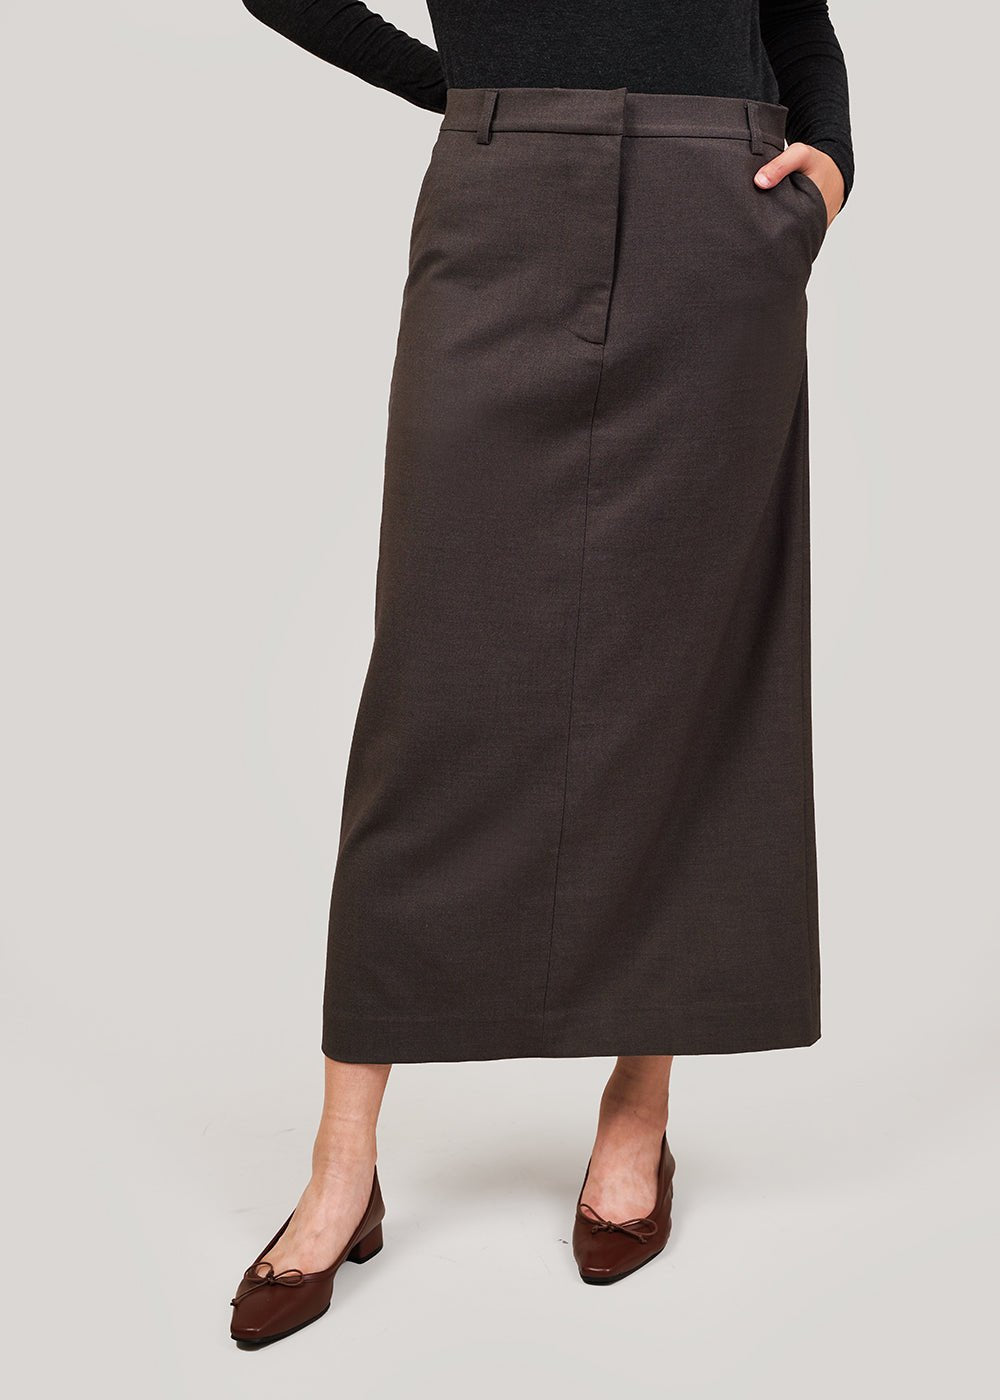 3 Reasons You Need A Rib Knit Midi Skirt - Pointed North